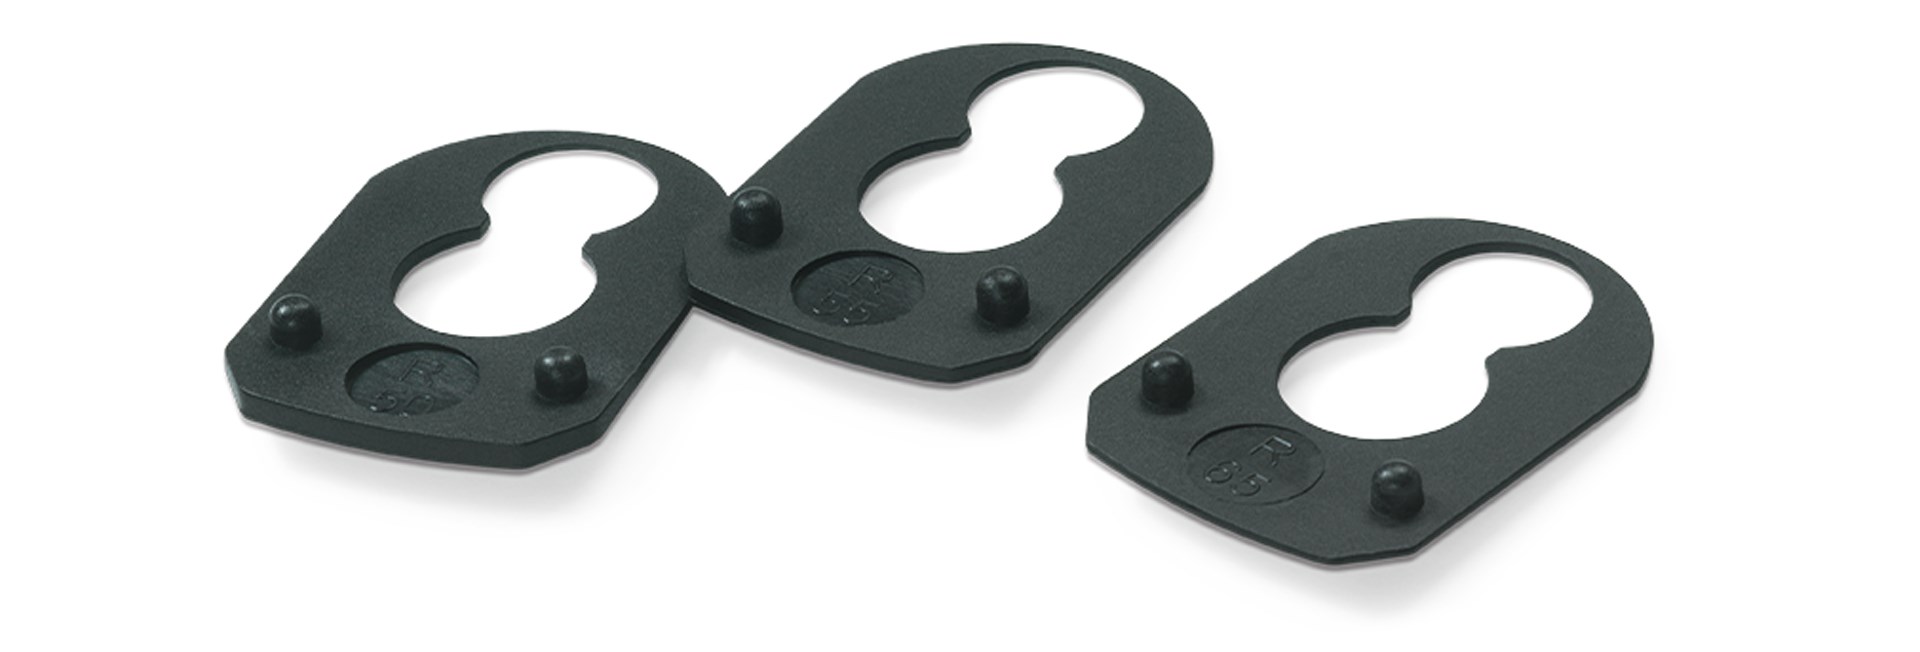 Black plastic polymer oval shims for Stoeger Industries 12 gauge shotgun stock adjustment parts